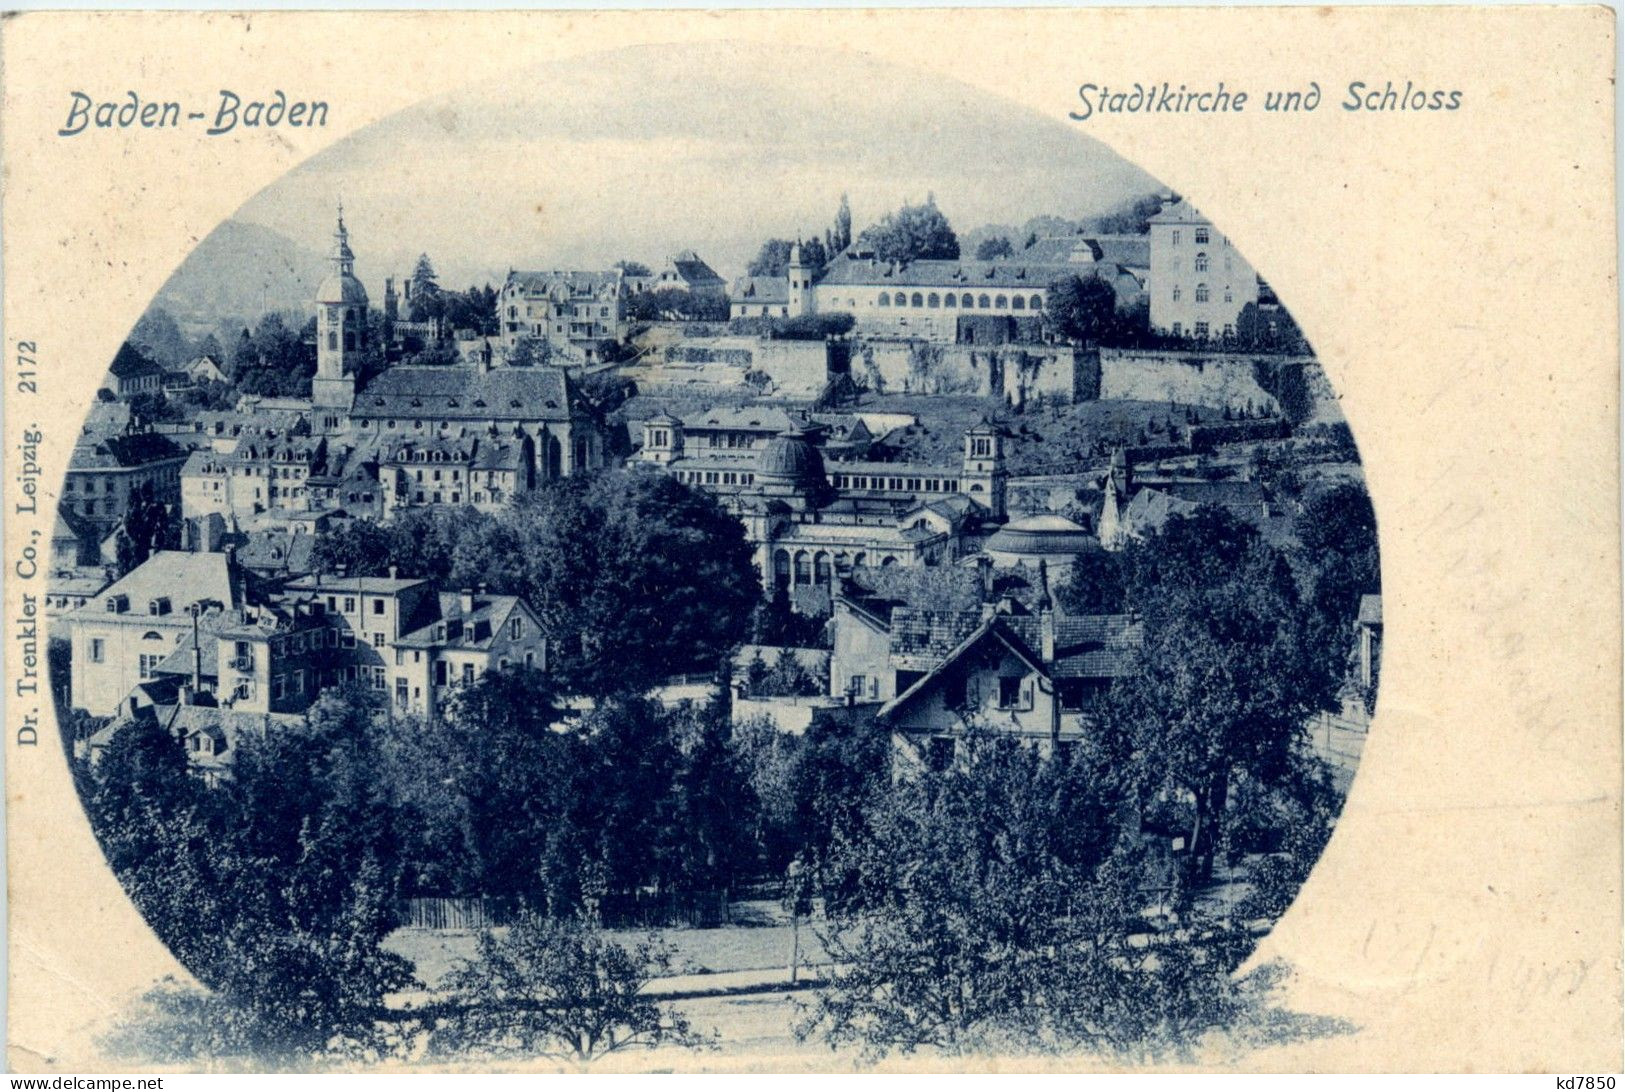 Baden-Baden - Baden-Baden